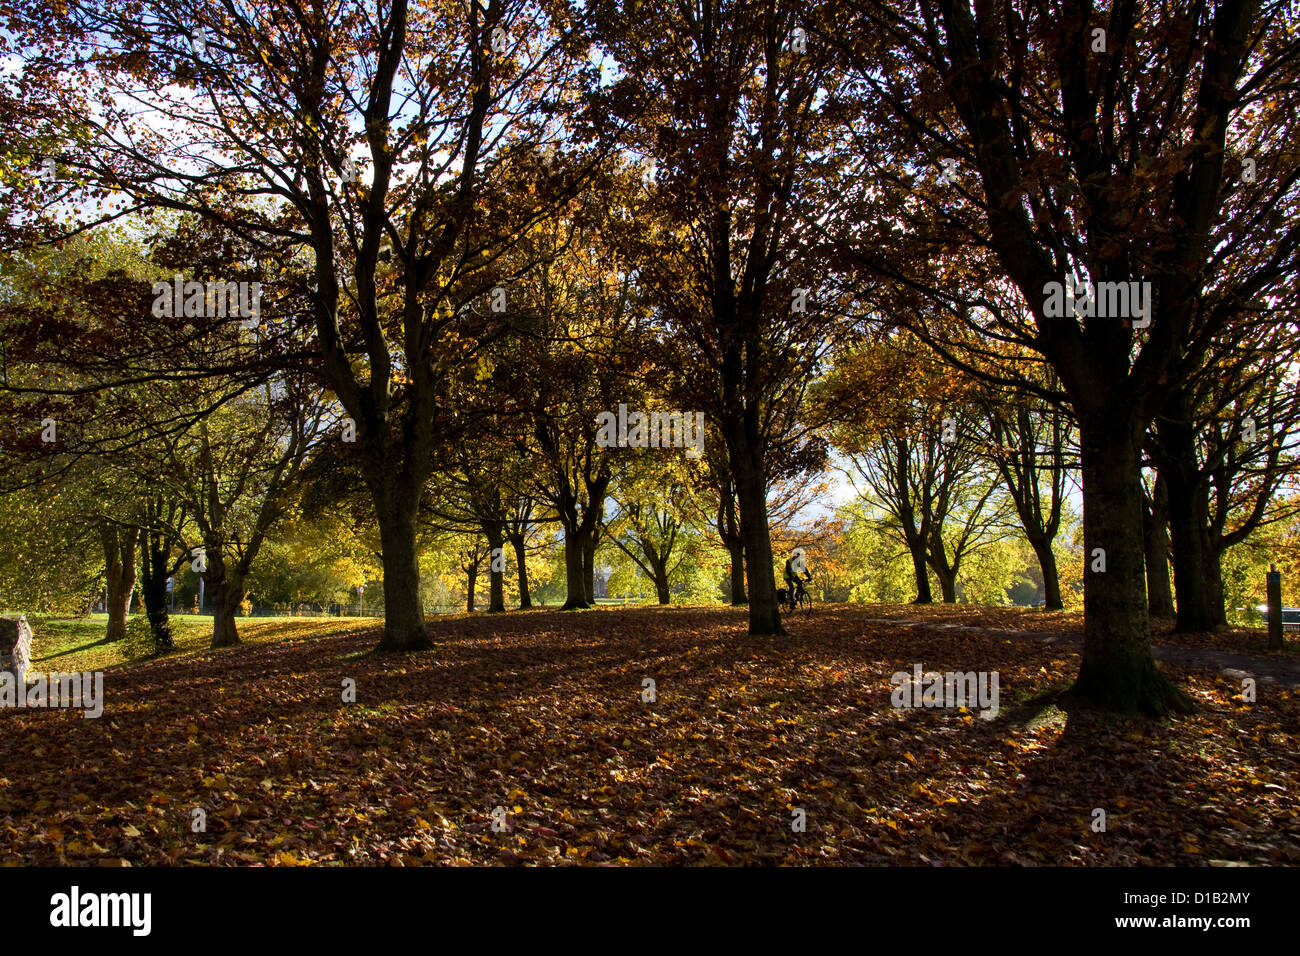 Le soleil qui brillait à travers les arbres d'automne casting de longues ombres sur le sol jonché de feuilles Banque D'Images